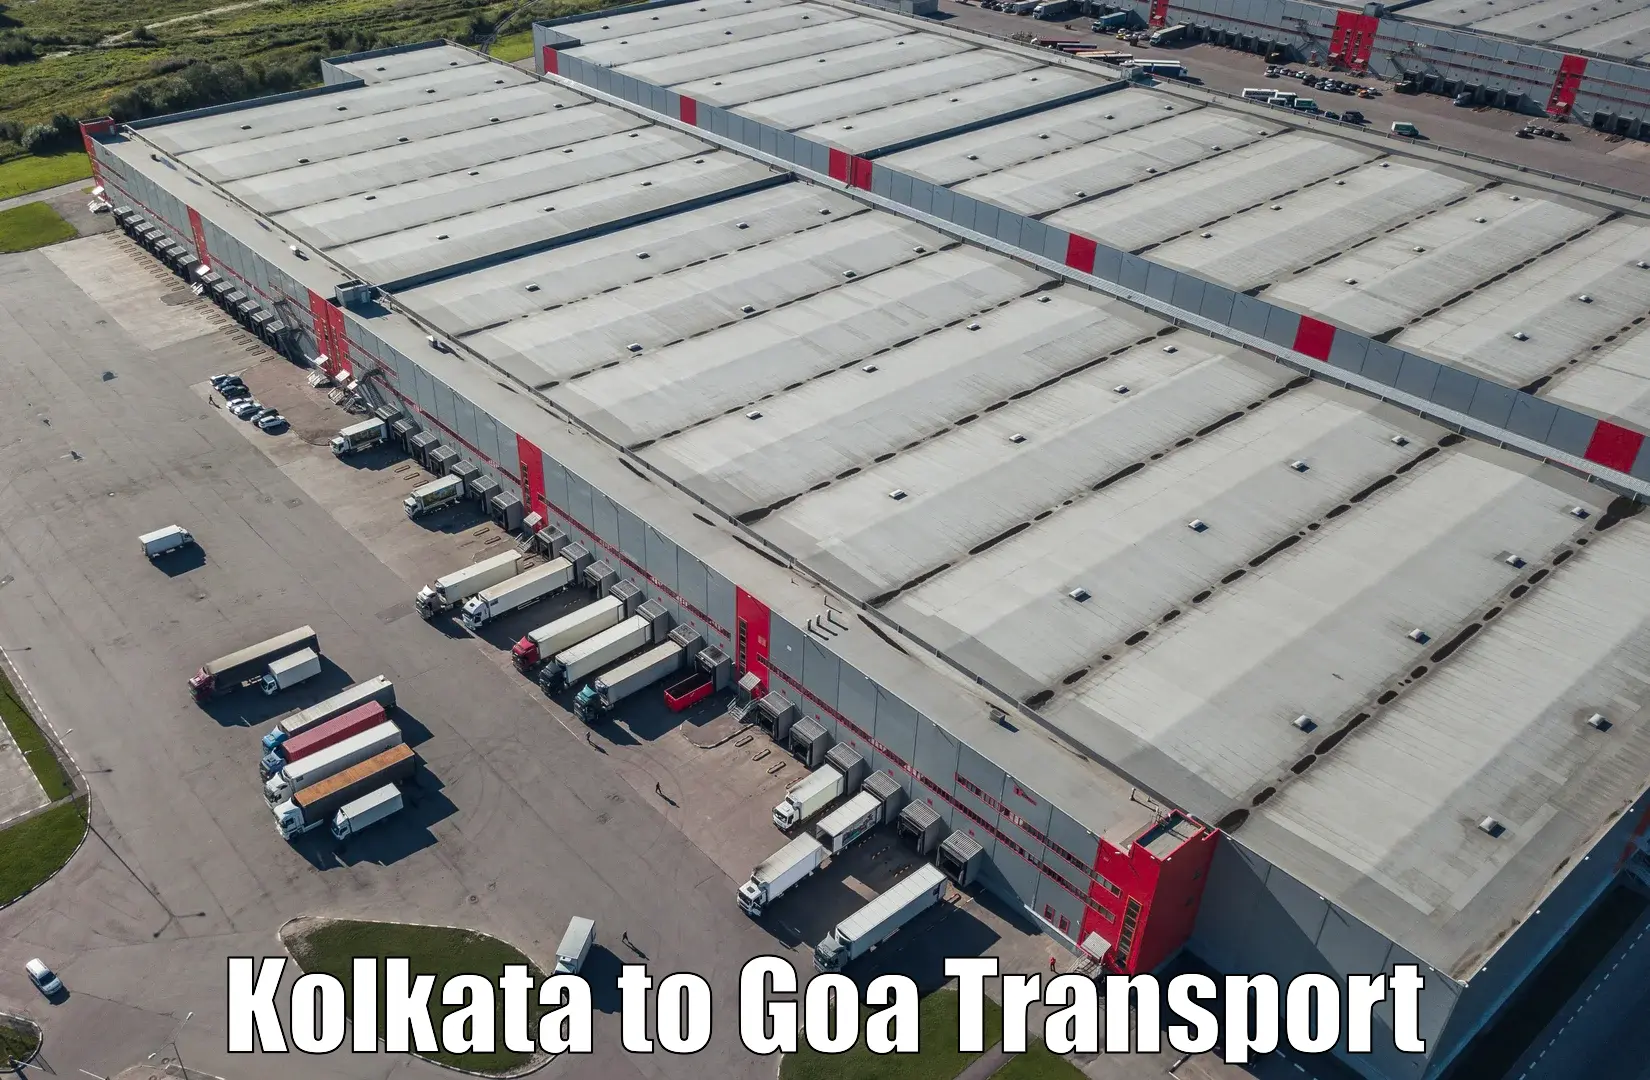 Air freight transport services Kolkata to Goa